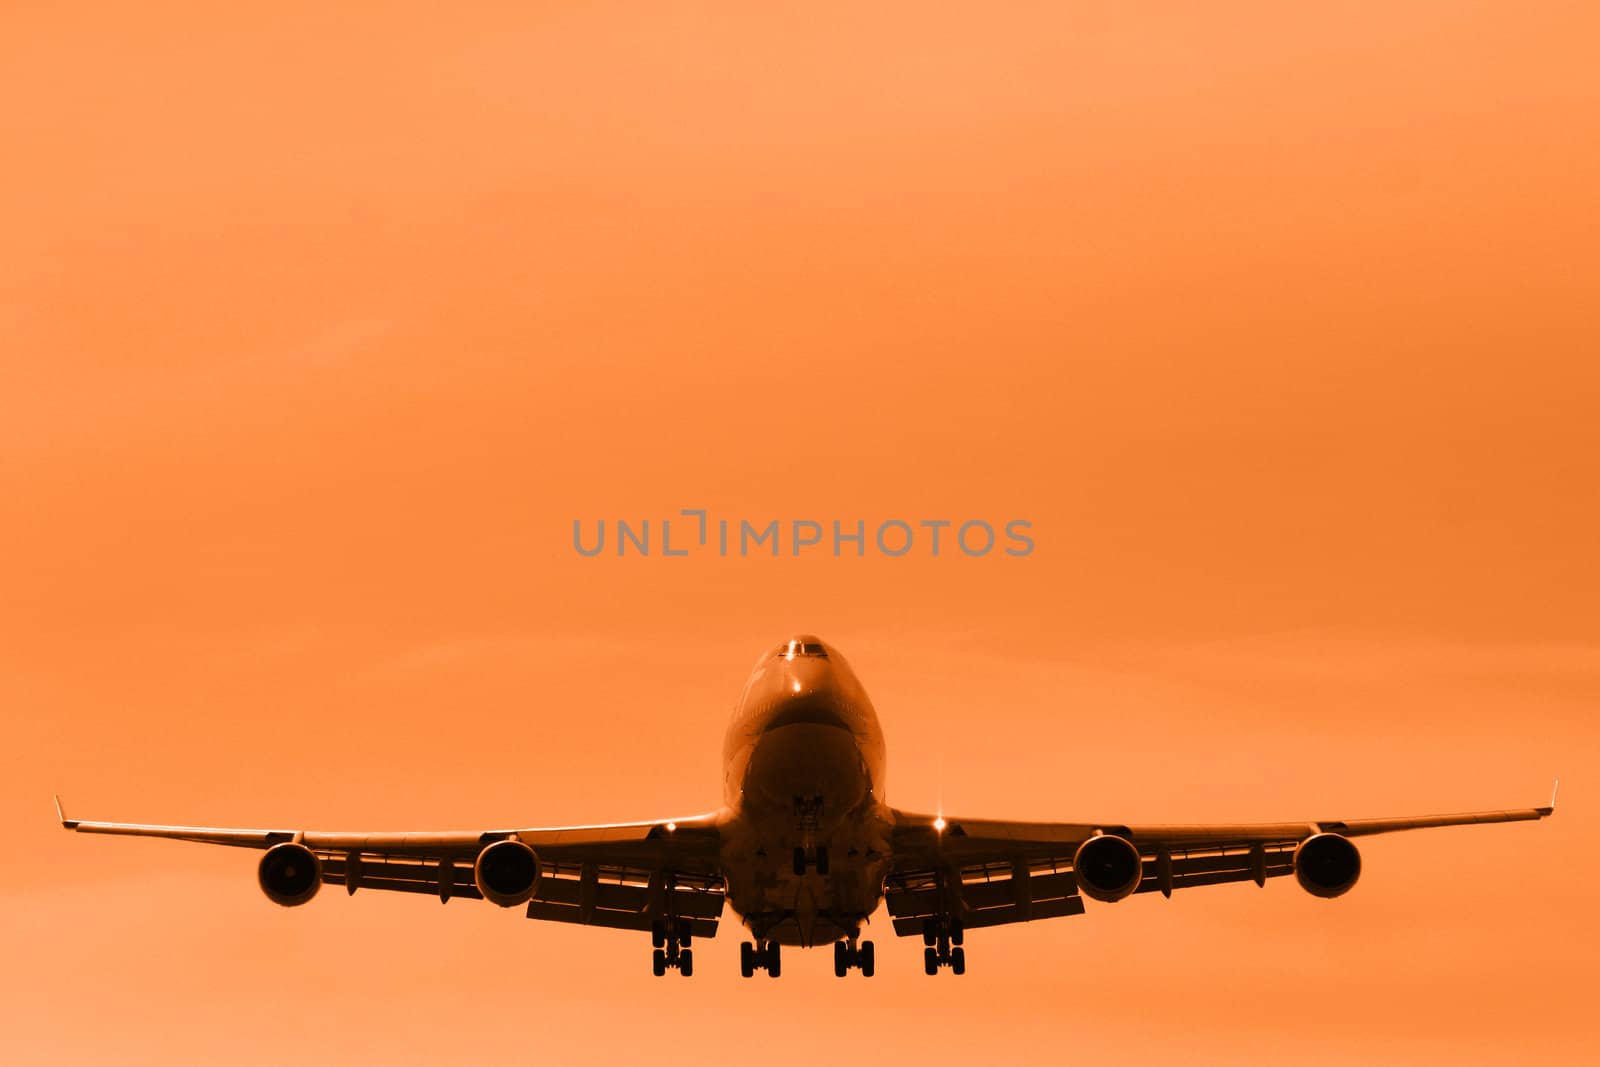 747 by Imagecom